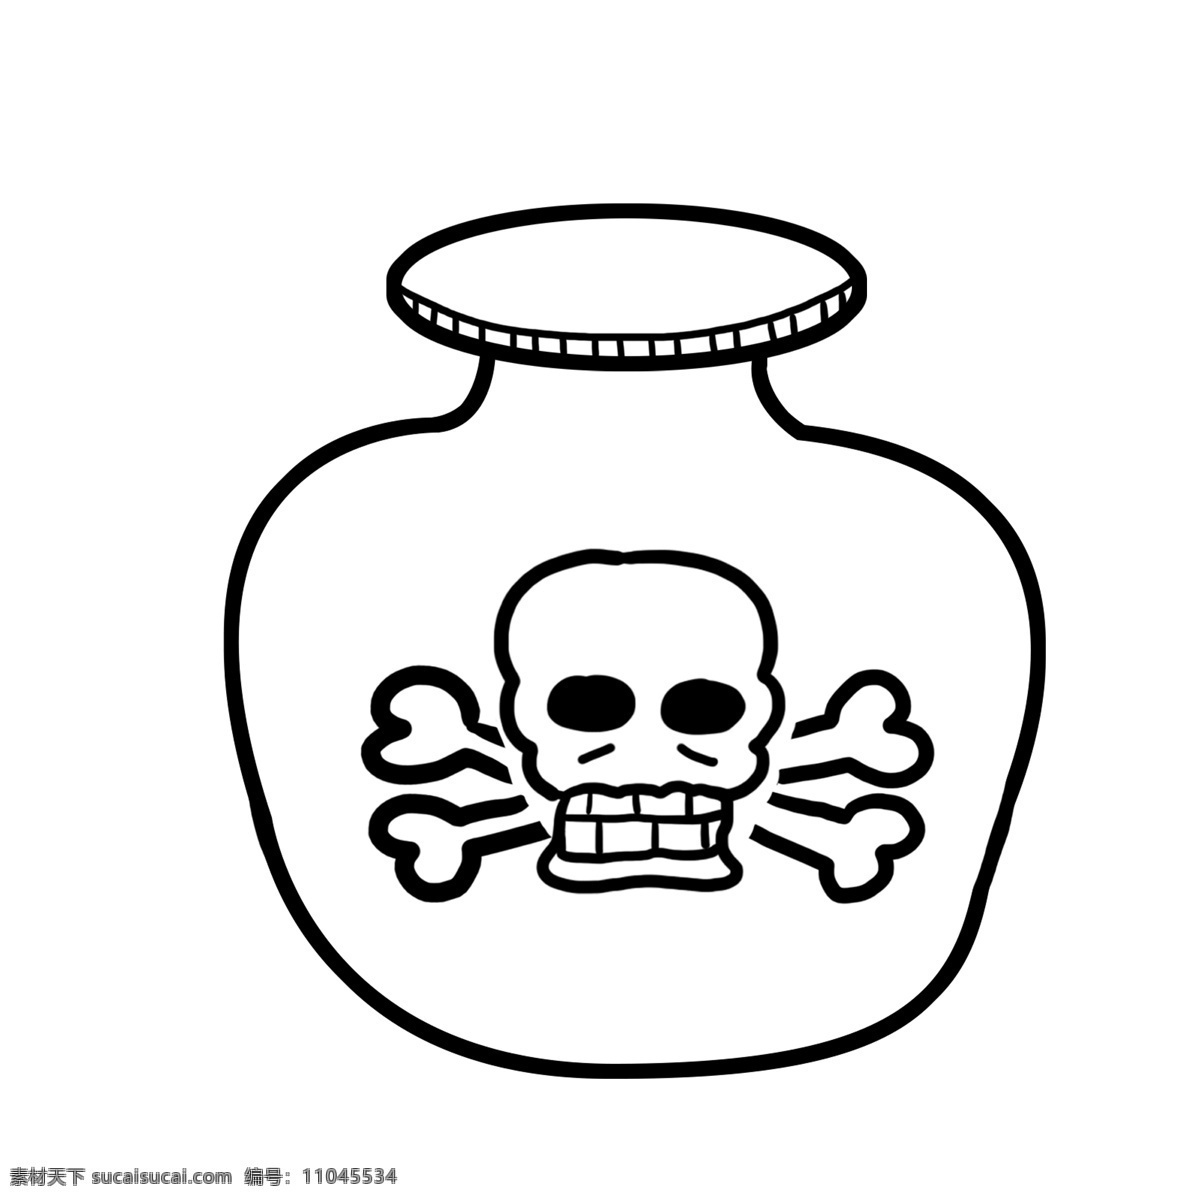 有毒物品图标 化学品图标 化学品 化学 图标 药物 药品 毒 医疗 药瓶